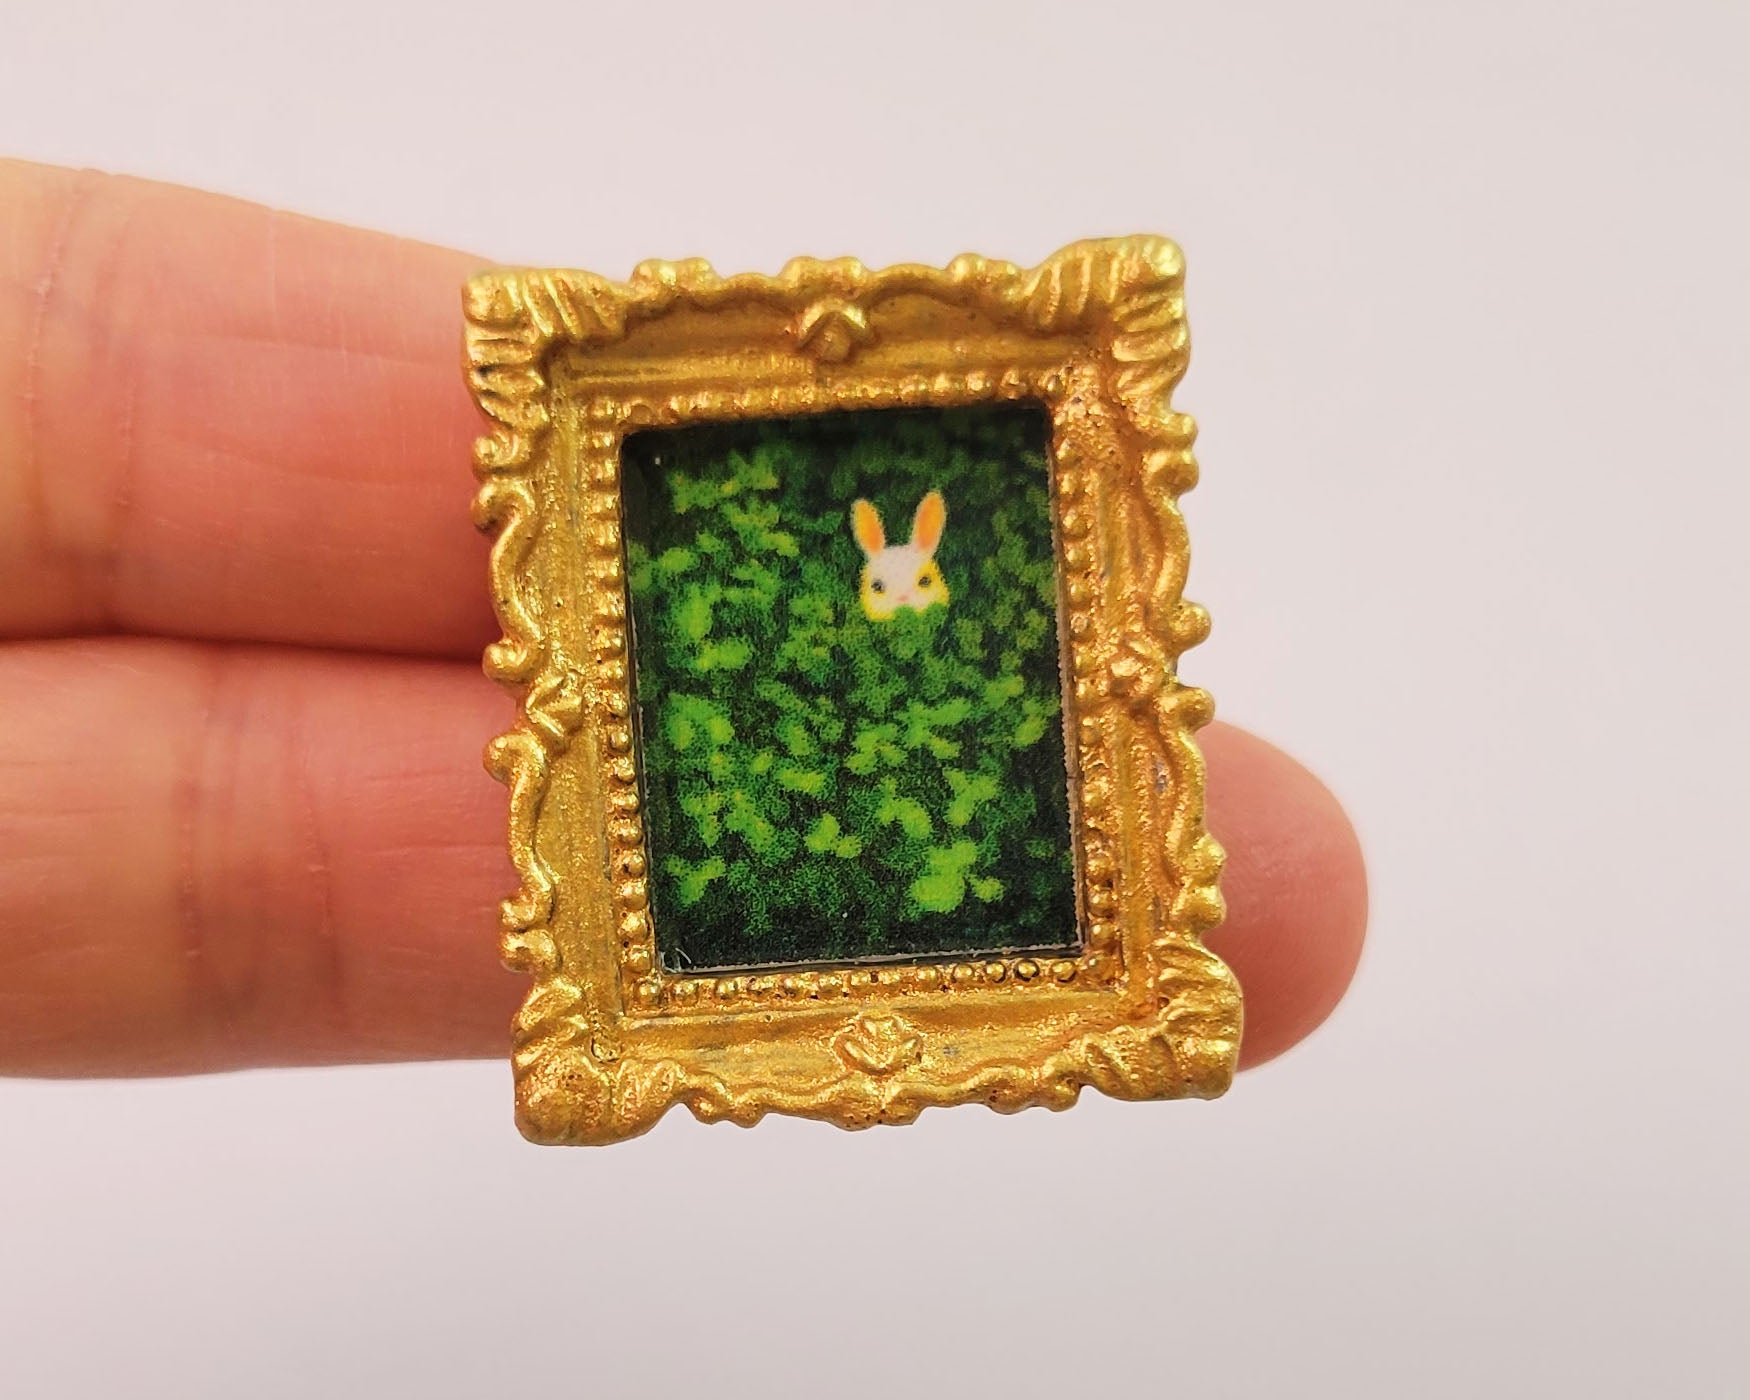 Miniature art pin, cute animal art